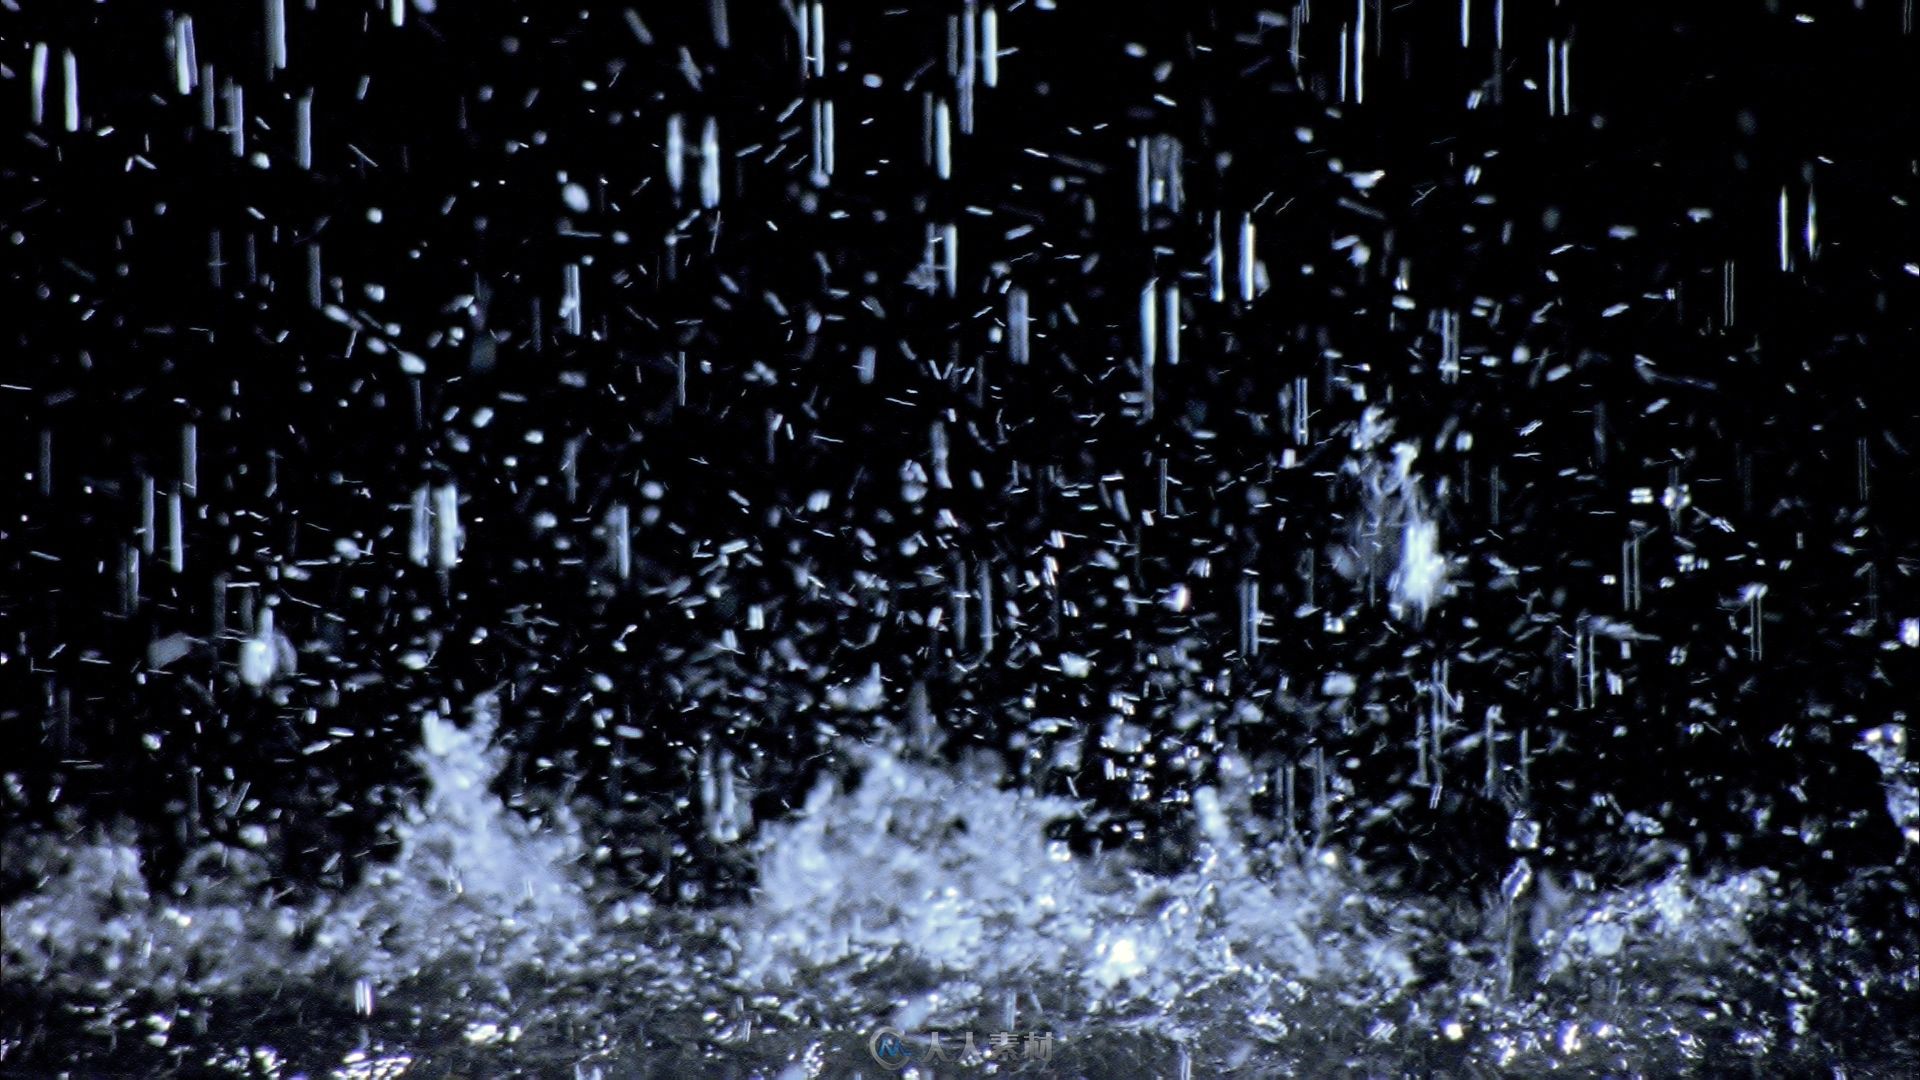 雨滴快速落下激起水花视频素材 - 视频素材 - 人